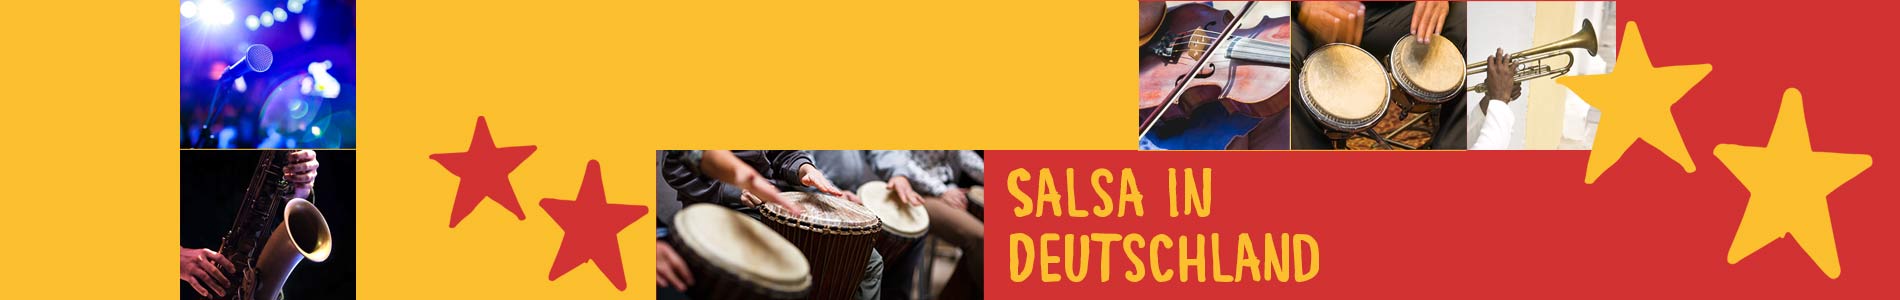 Salsa in Buch am Buchrain – Salsa lernen und tanzen, Tanzkurse, Partys, Veranstaltungen